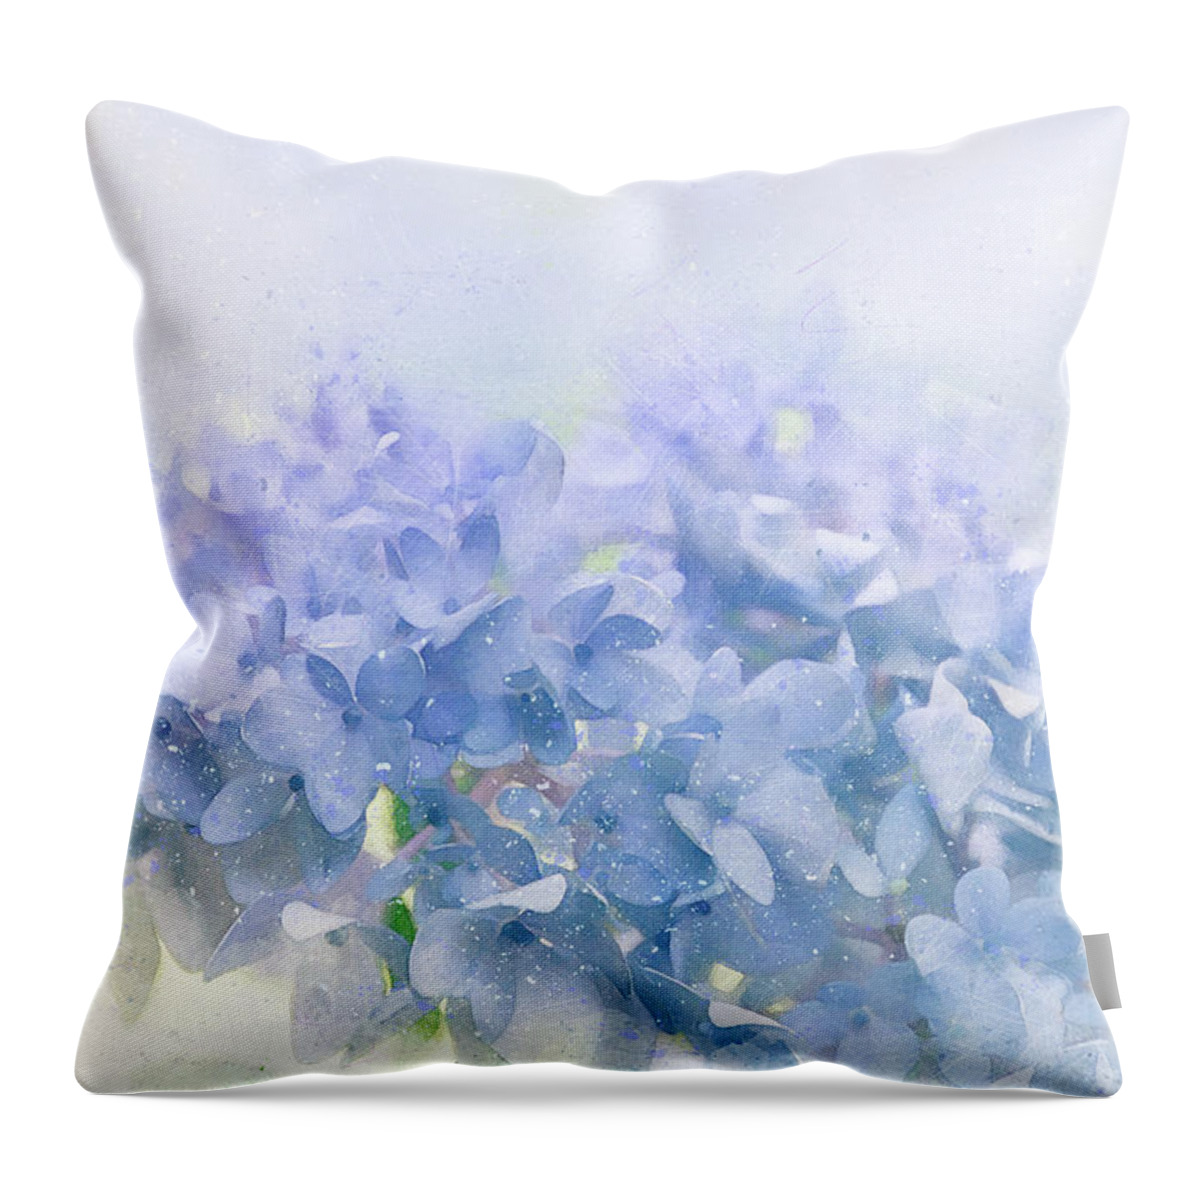 Hydrangea Throw Pillow featuring the digital art Blue Hydrangea Light by Terry Davis